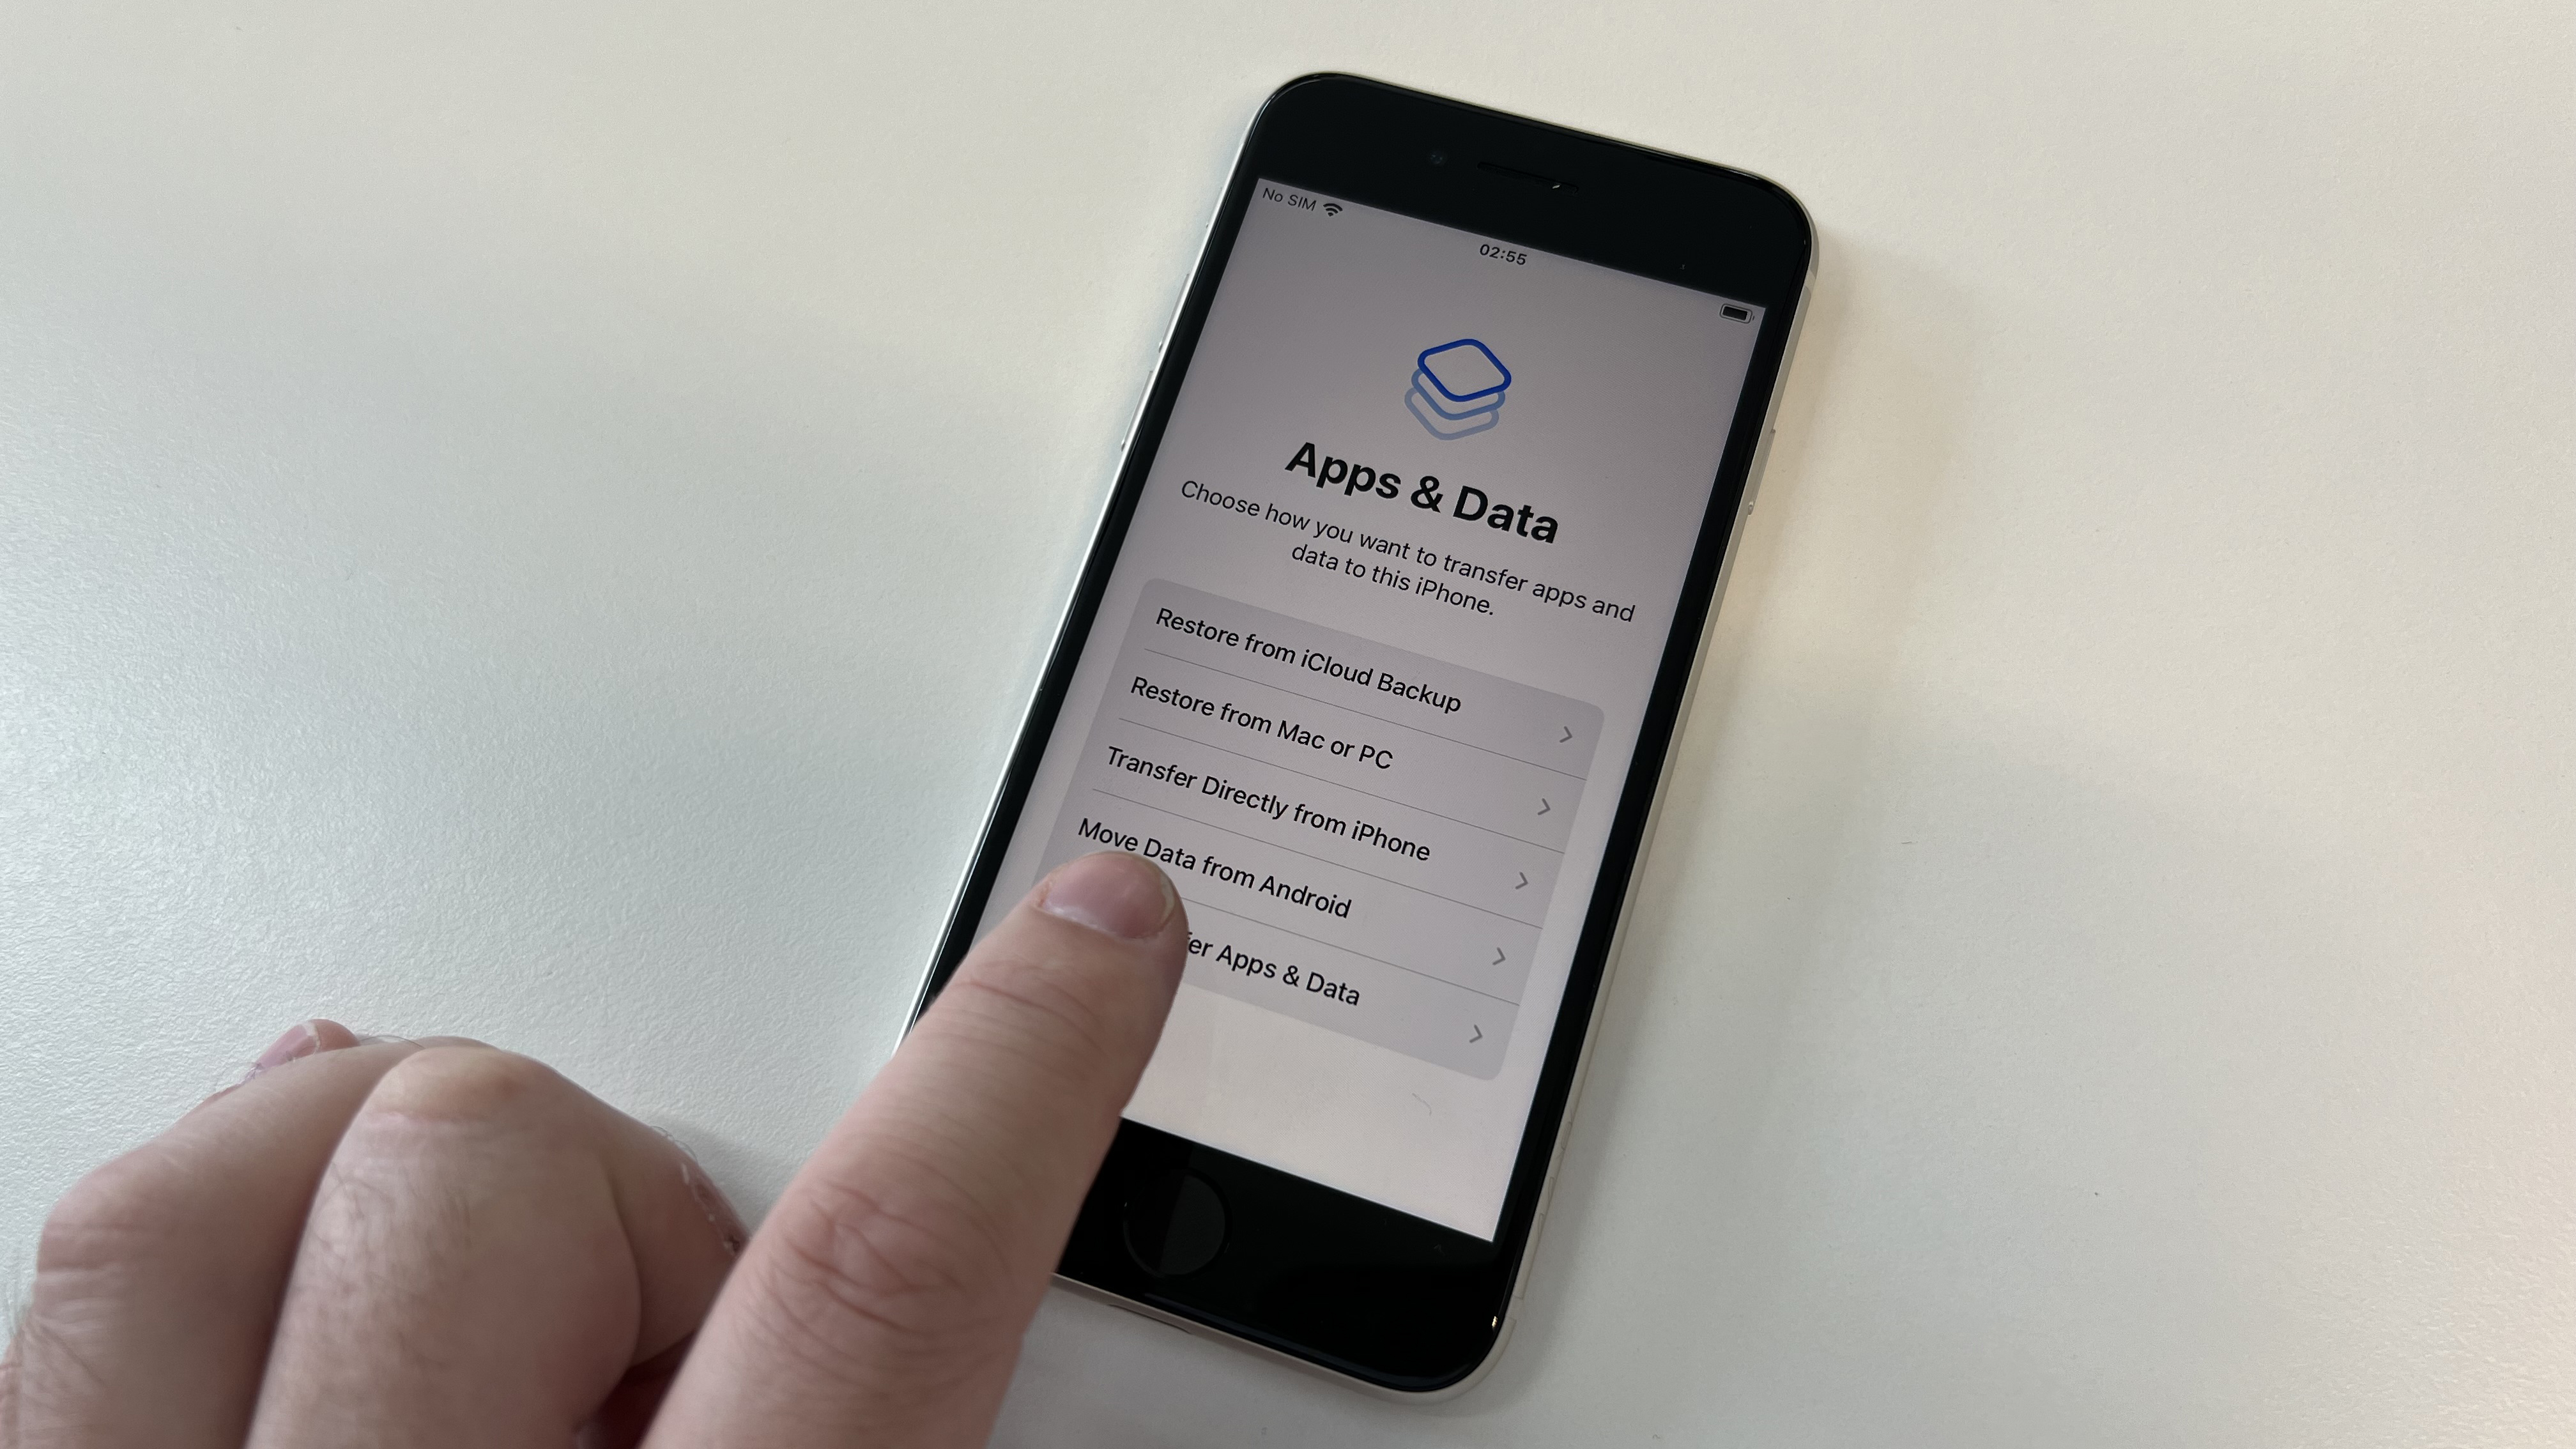 Kullanıcının verileri nereden içe aktarmak istediğini soran iPhone kurulum menüsü.  Android'den Verileri Taşı seçeneğini işaret eden bir parmak